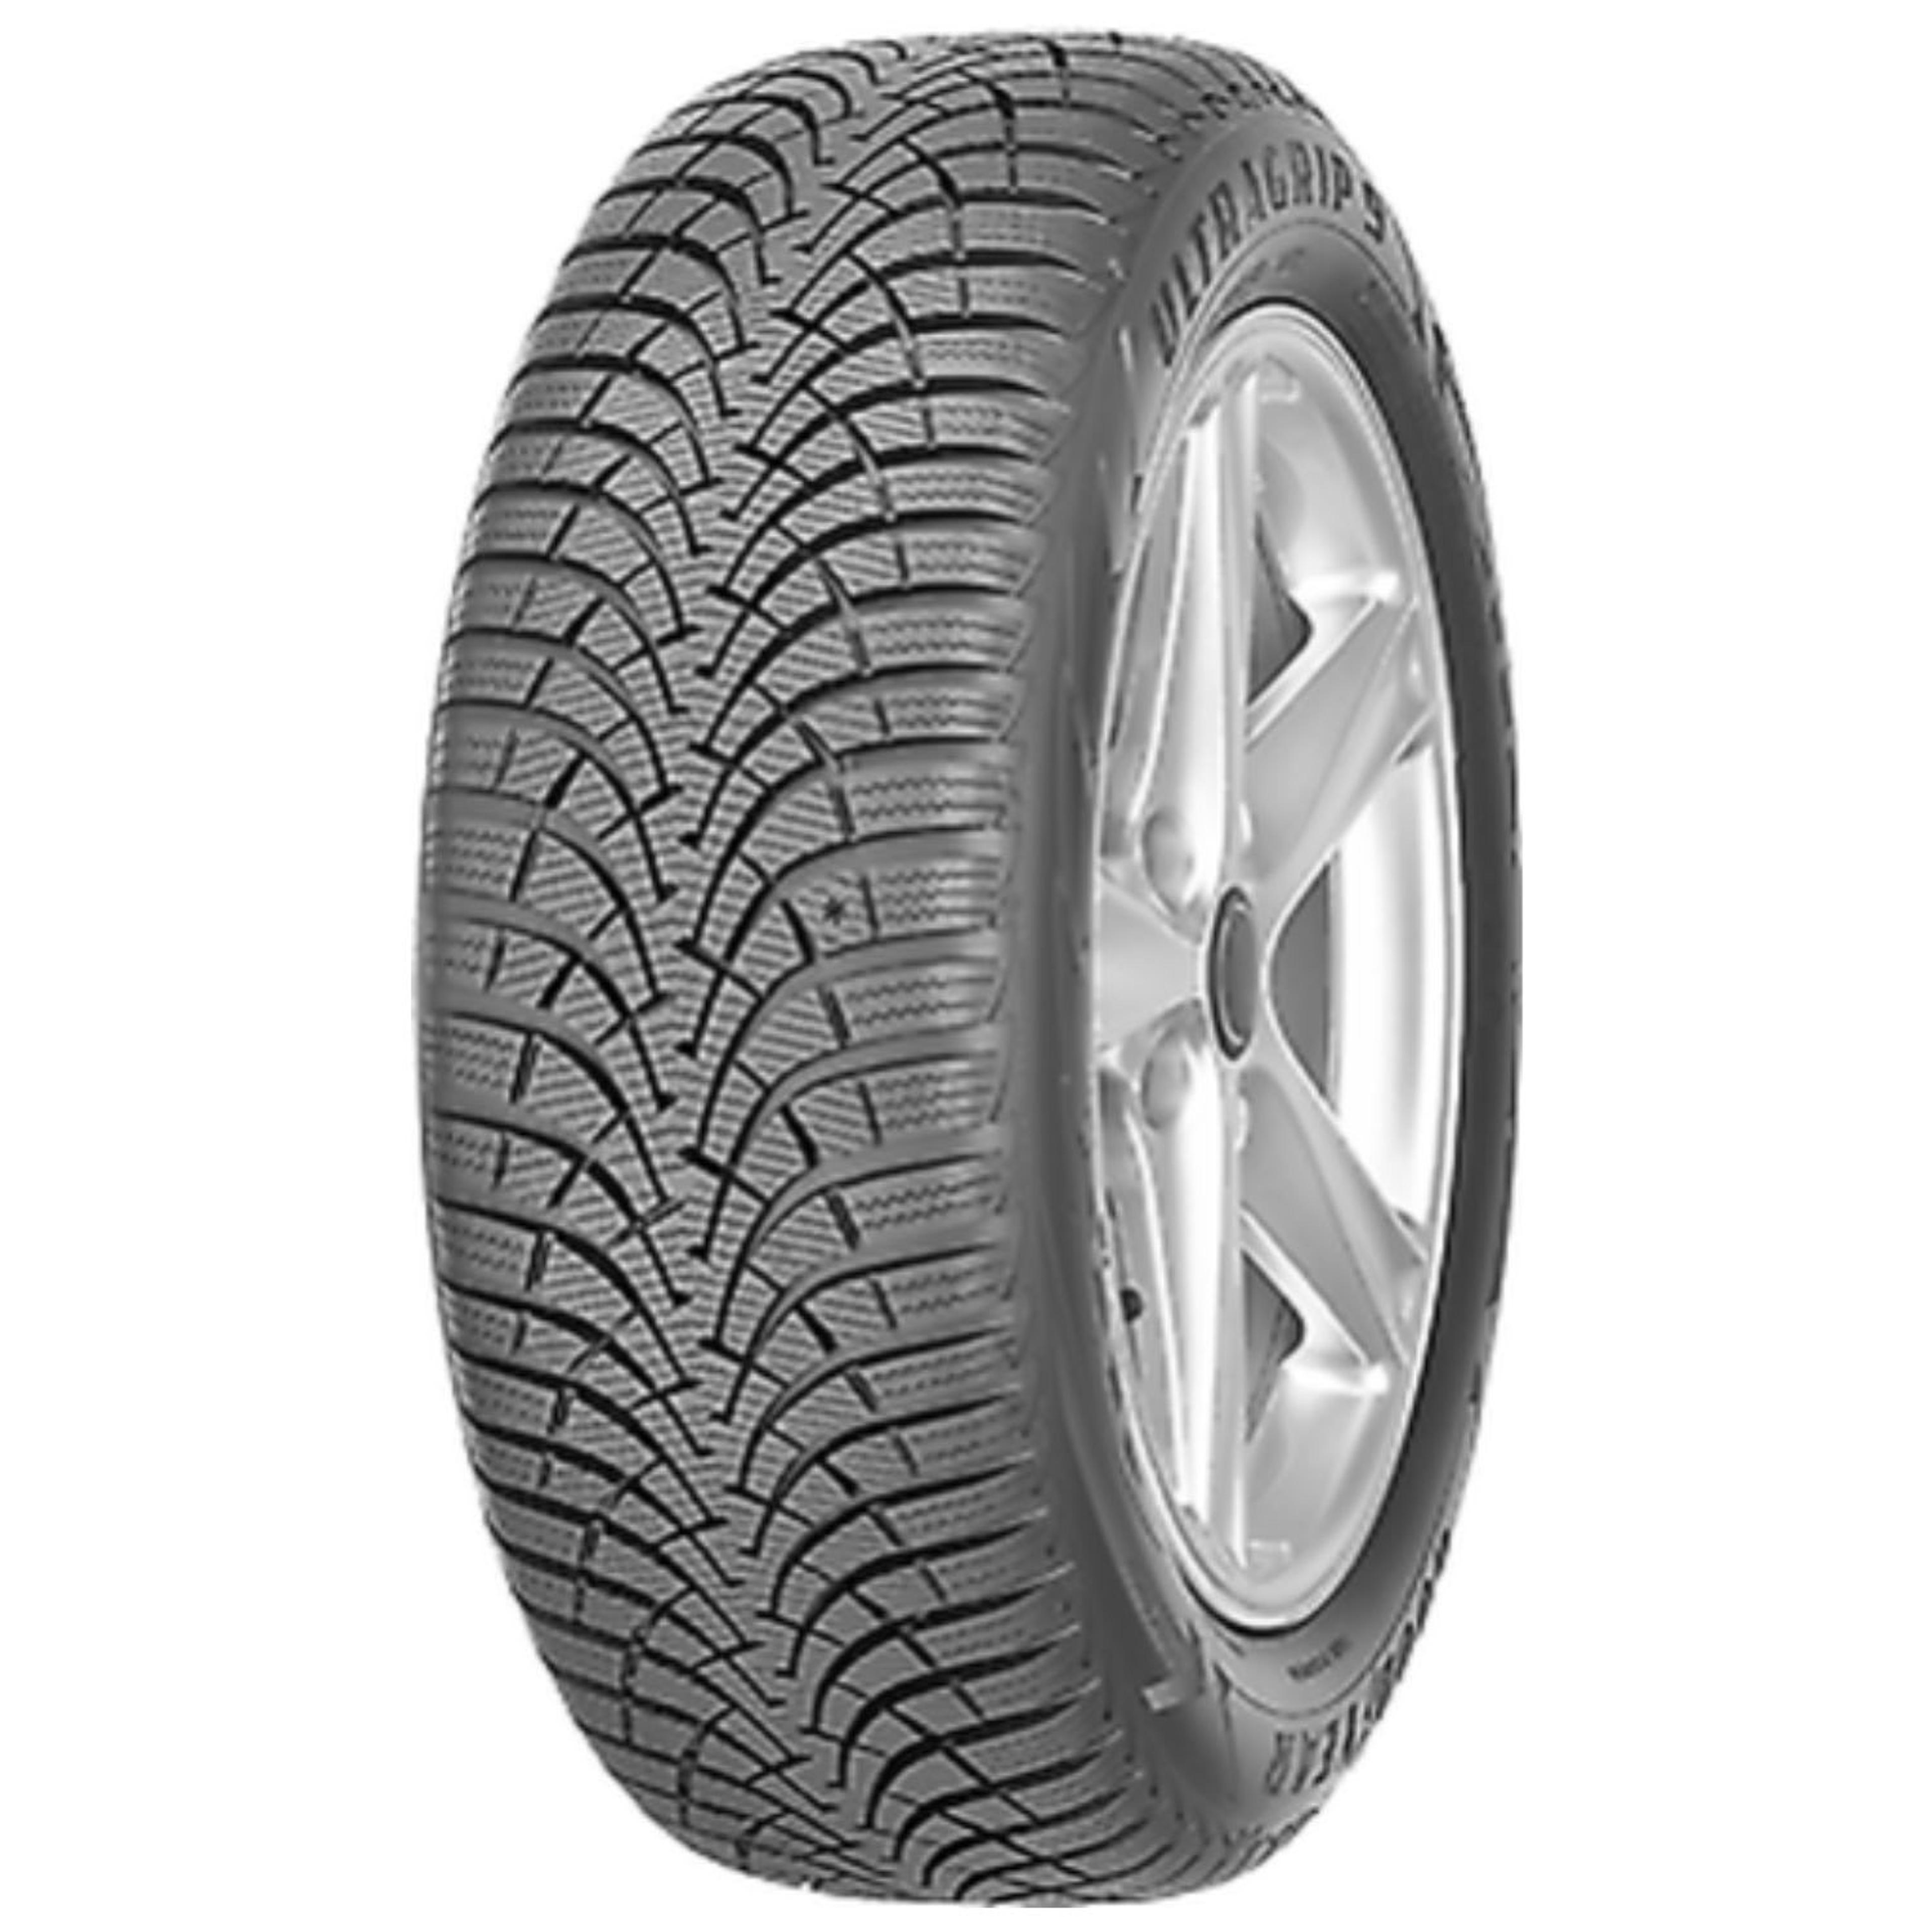 Buy Goodyear Ultra Tires Grip 9 Plus | SimpleTire 195/65R15